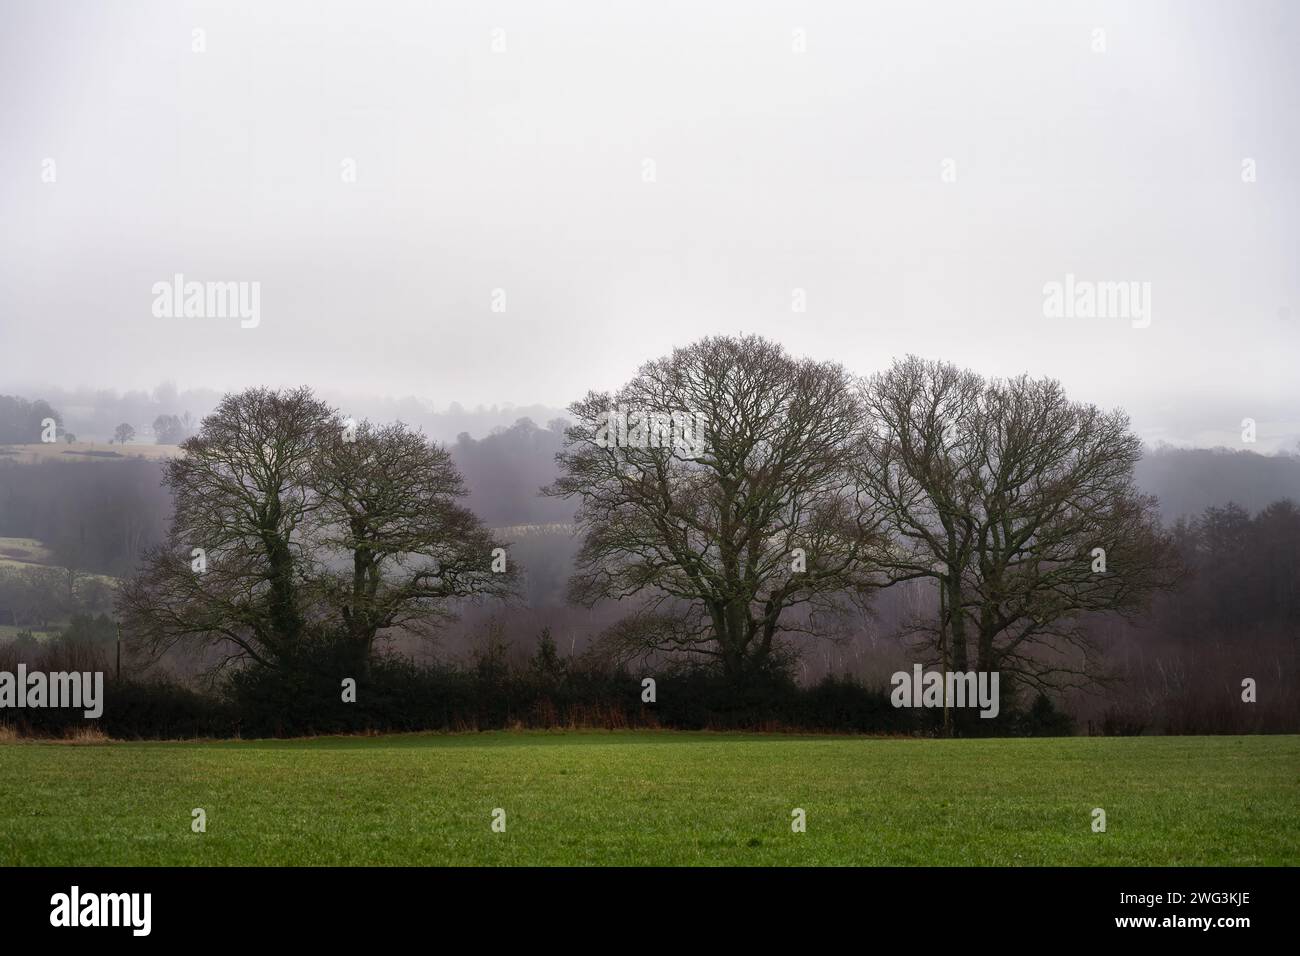 Camminando a Wealden, nell'East Sussex, in Inghilterra, in una nebbiosa mattina invernale. Tre oaktree senza foglie. Foto Stock